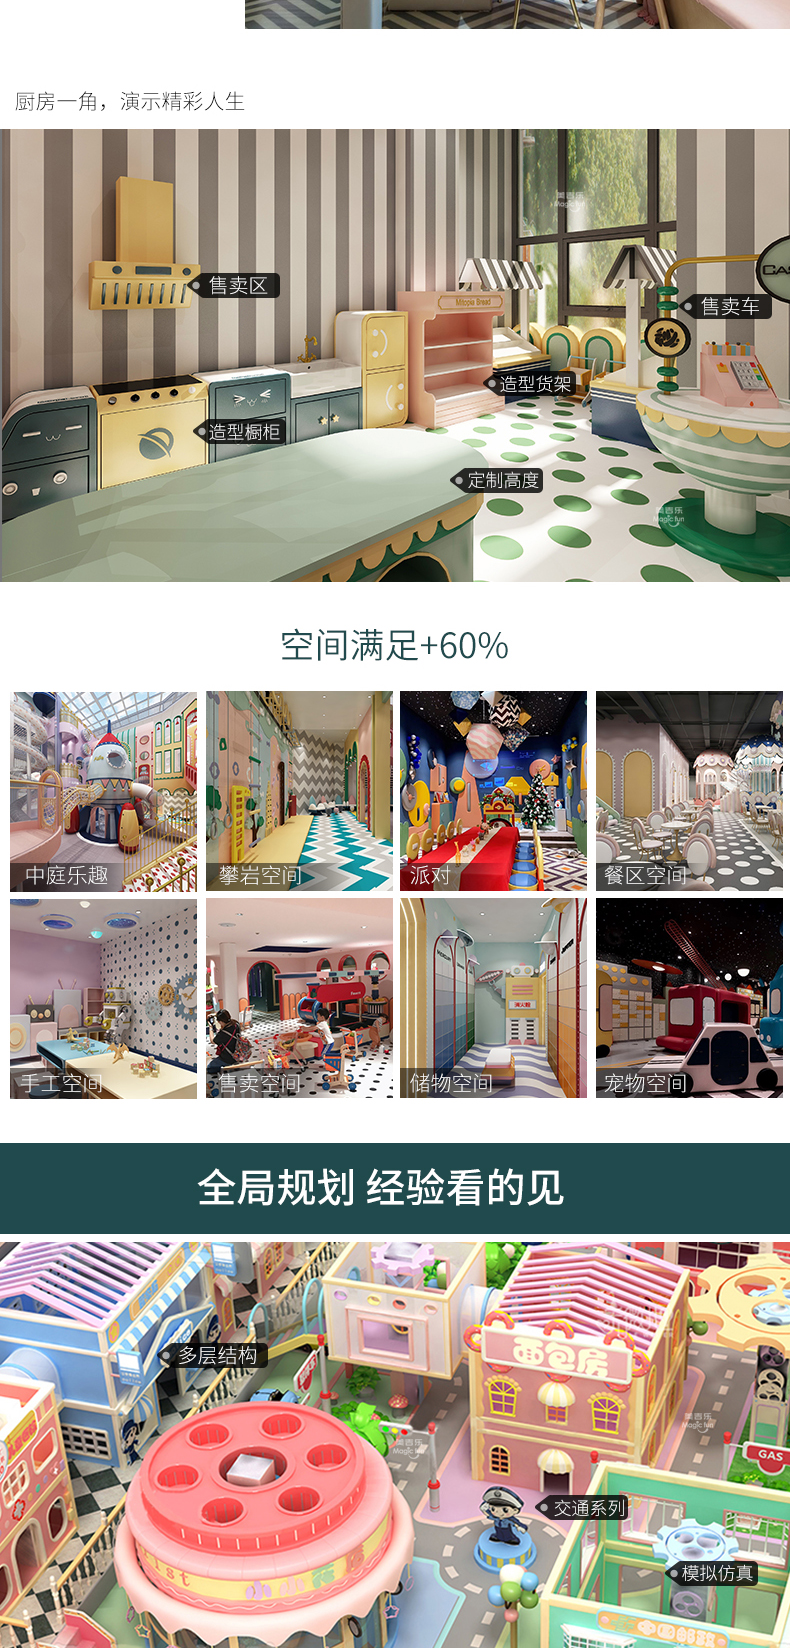 武汉游乐场室内设备 淘气堡儿童乐园 大型亲子餐厅 10